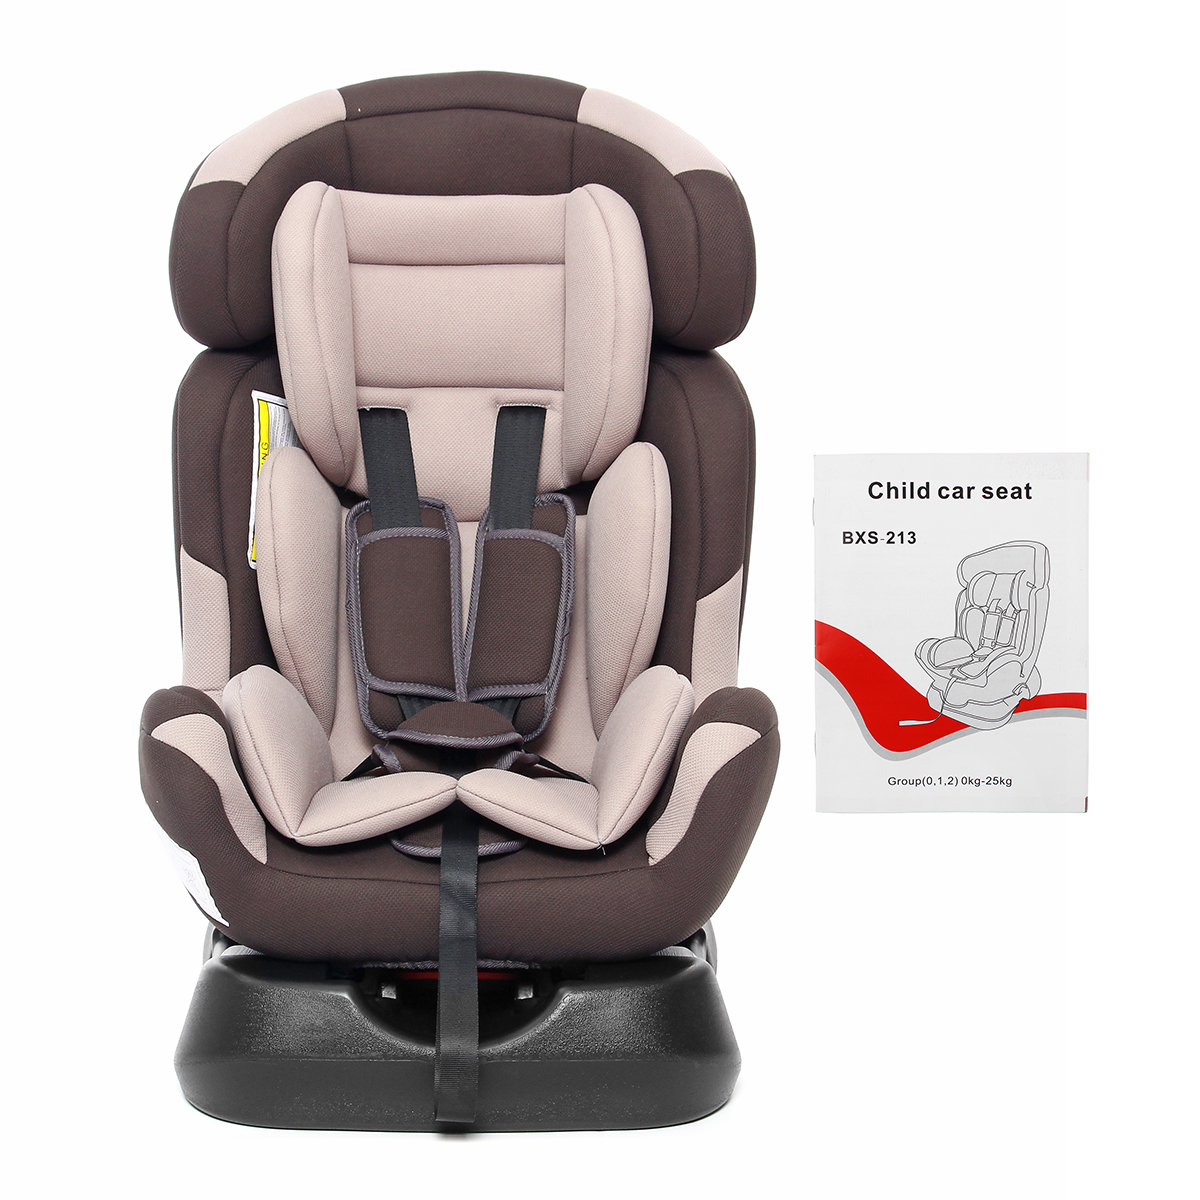 Liegender Babyauto-Kindersitz, rückwärts gerichtet, für Kinder von 0 Monaten bis 7 Jahren